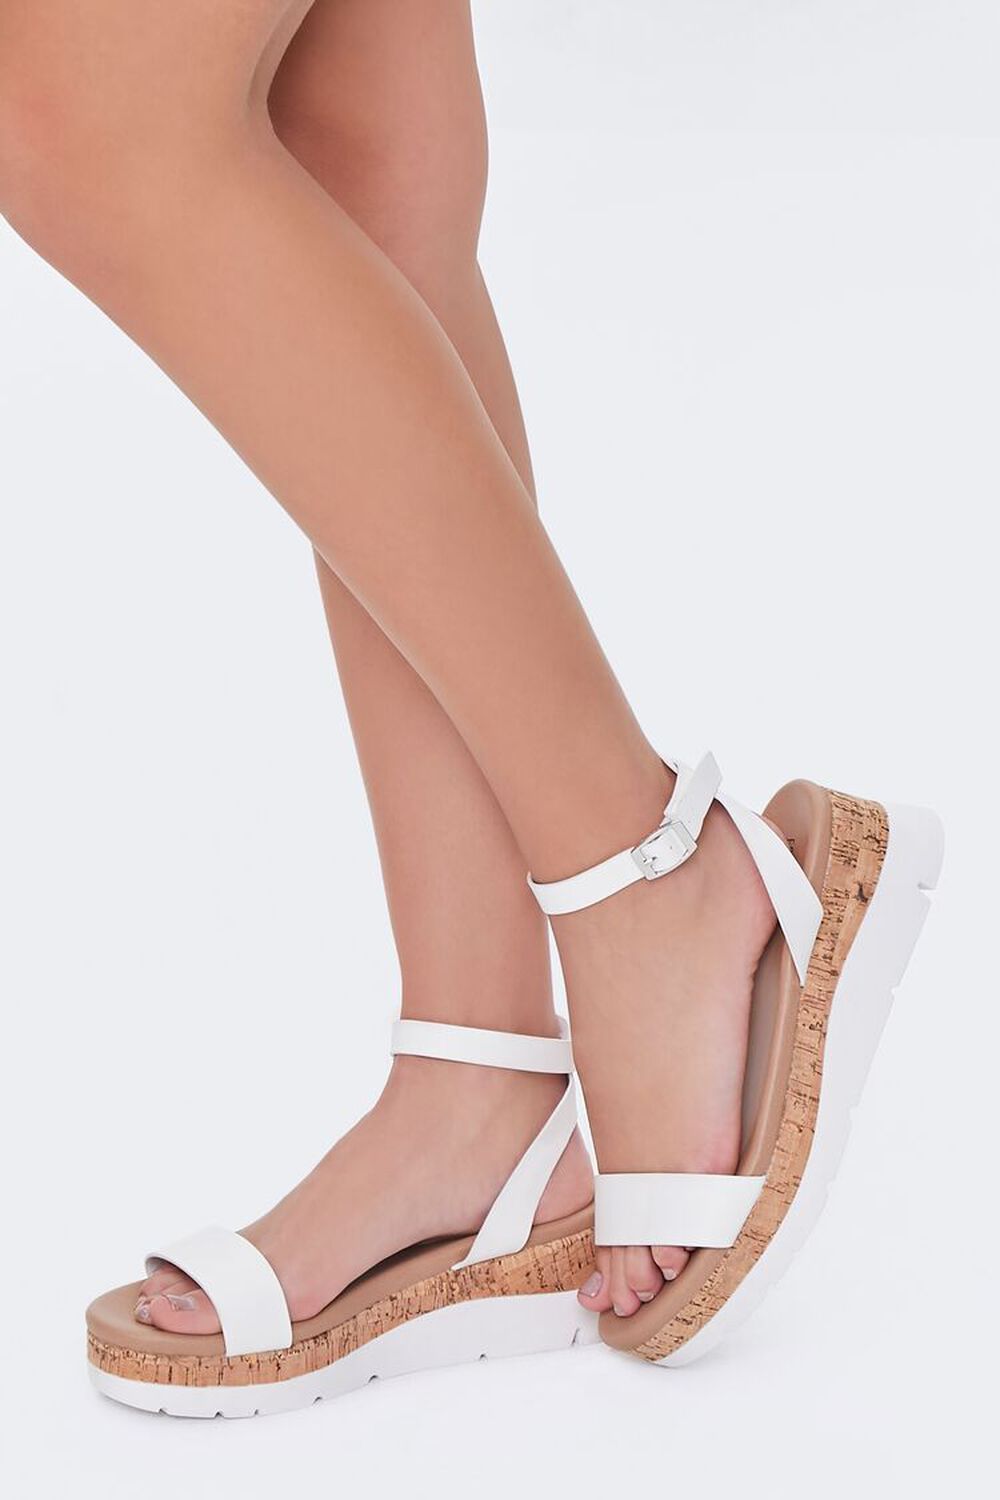 WHITE Cork Ankle-Strap Flatform Sandals, image 1